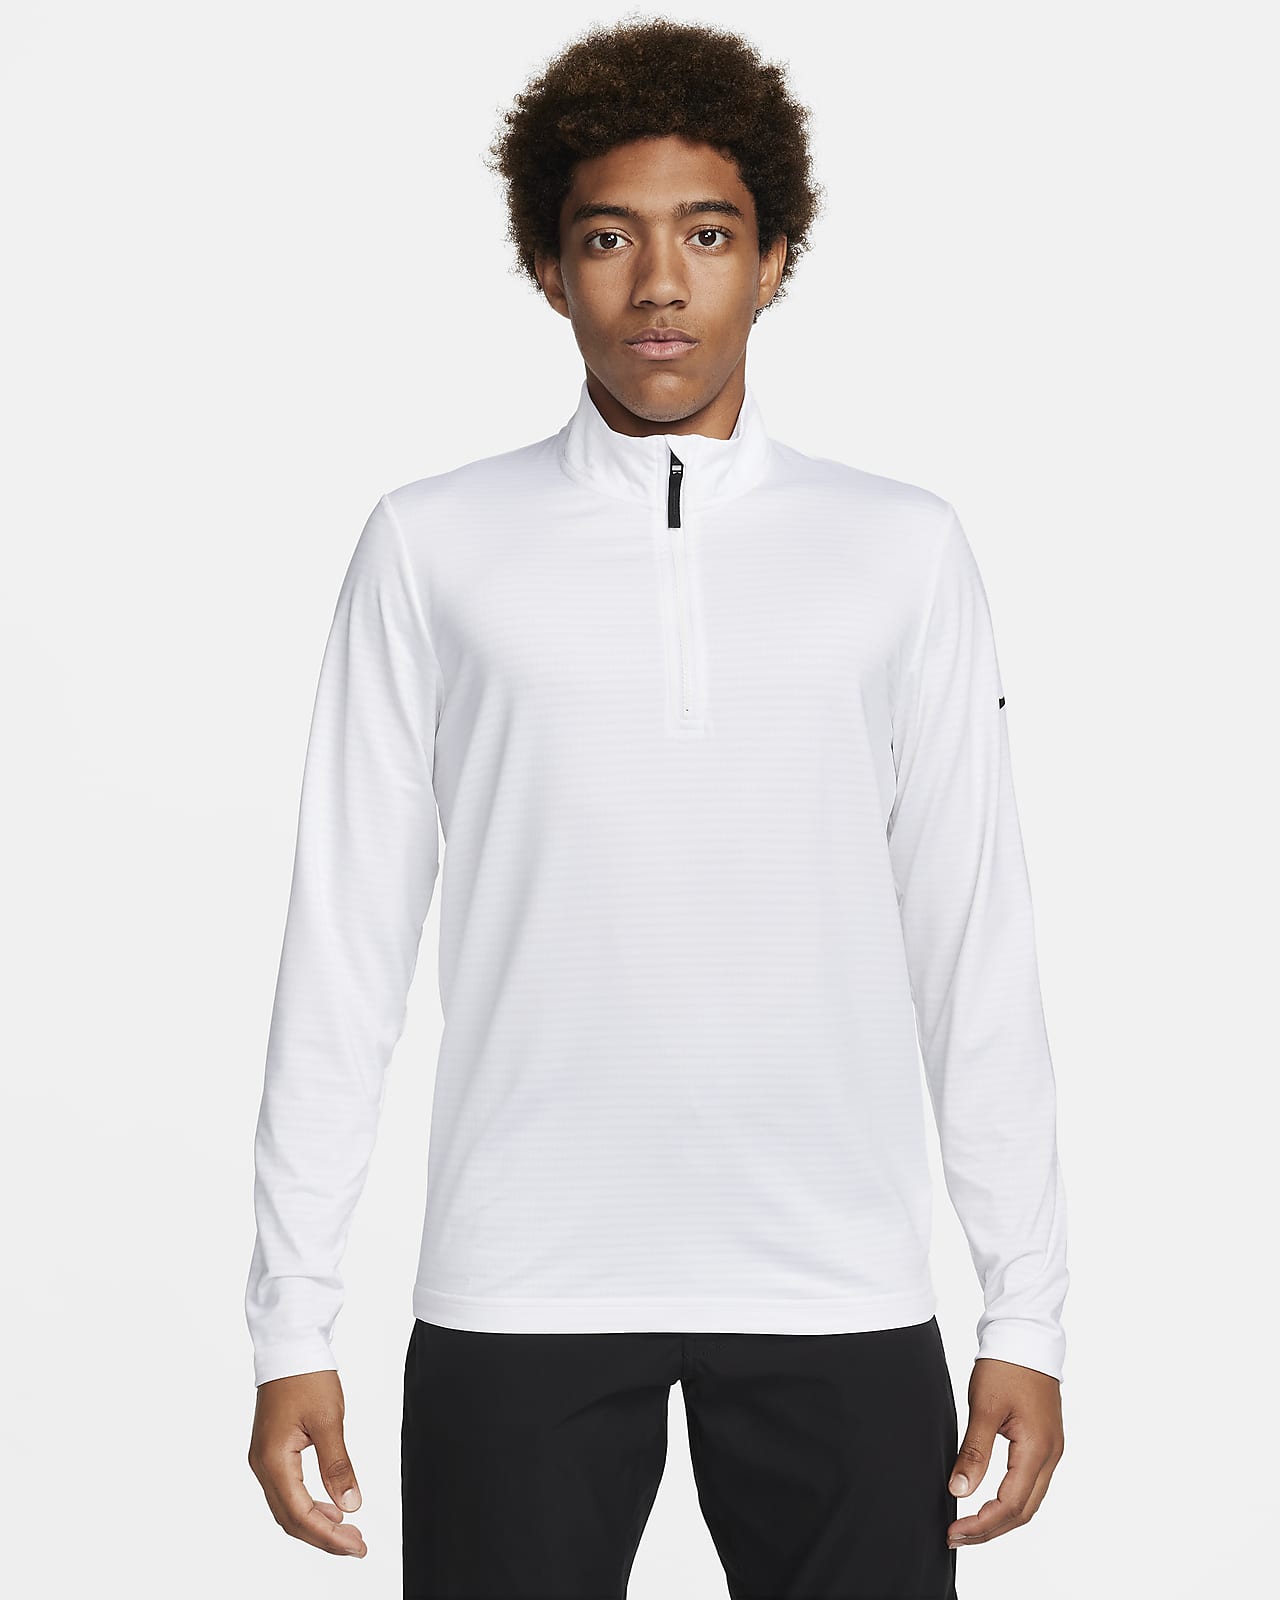 Ανδρική μπλούζα γκολφ Dri-FIT με φερμουάρ στο 1/2 του μήκους Nike Victory